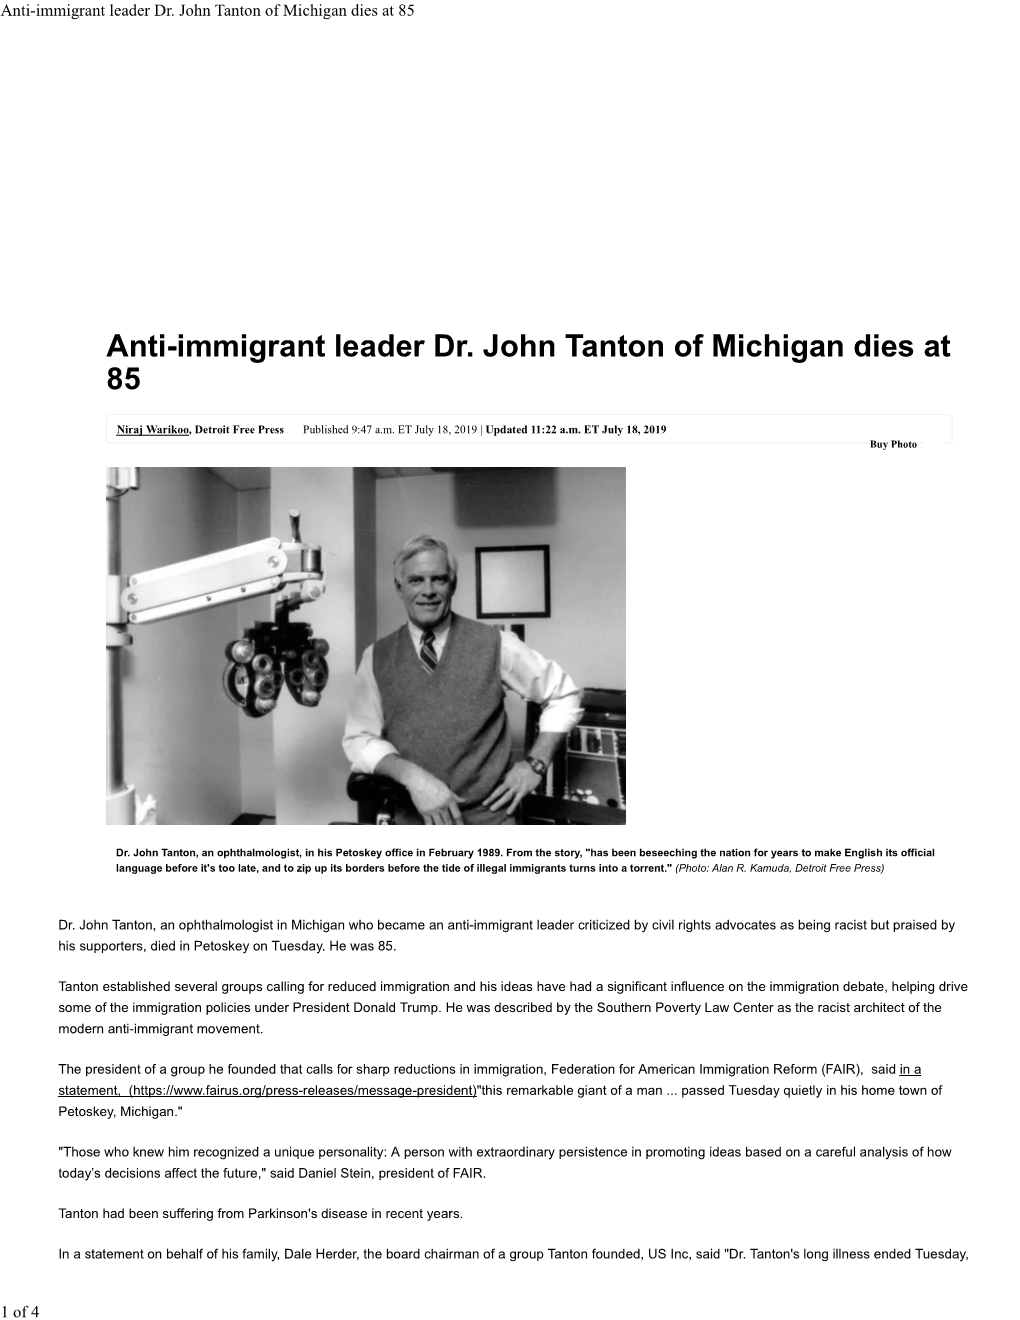 Anti-Immigrant Leader Dr. John Tanton of Michigan Dies at 85